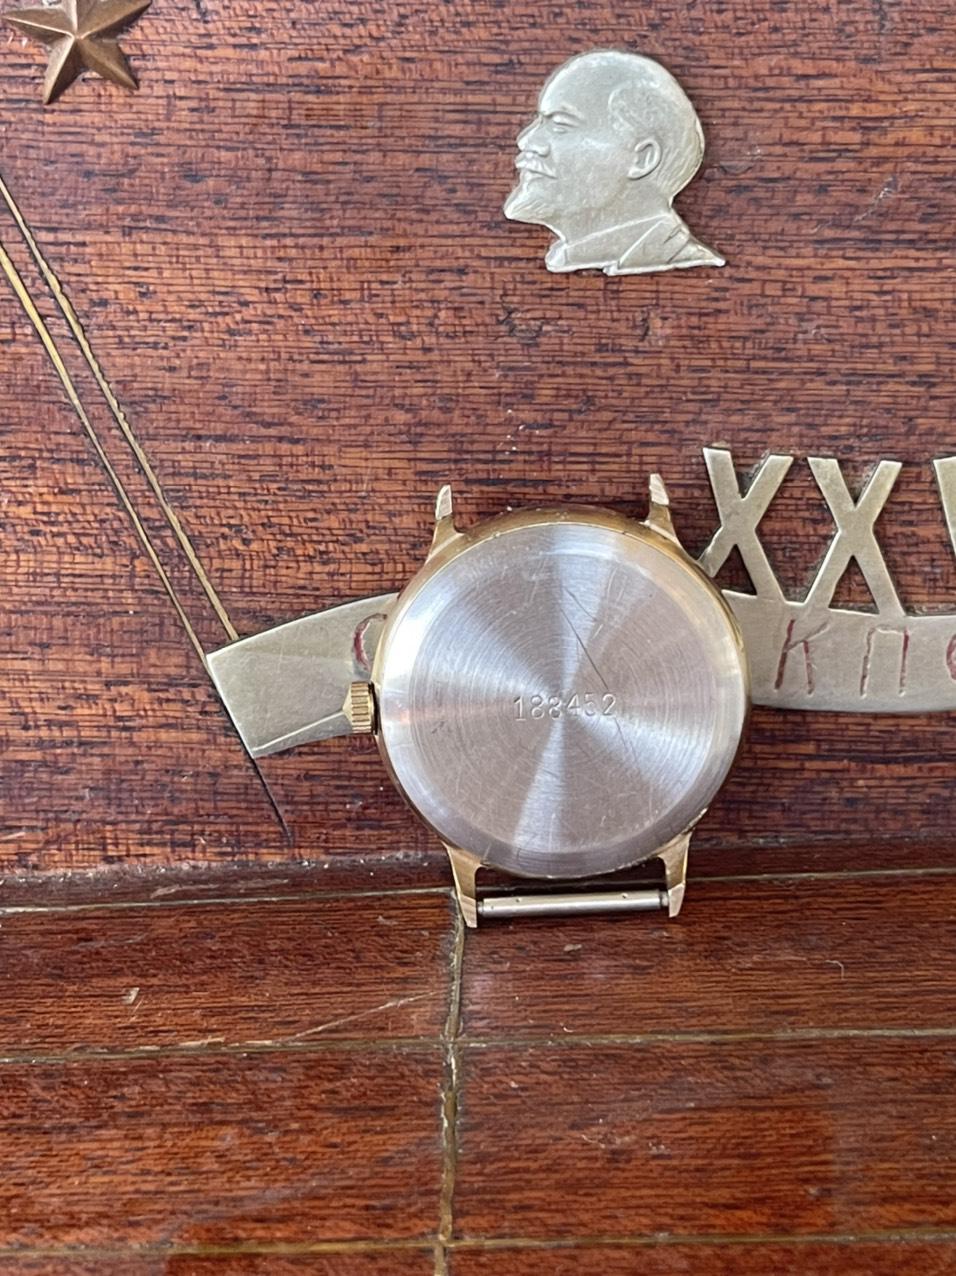 Vỏ đồng hồ nga cổ  nguyên rin nguyên bản, hoạt động ổn định, đầy đủ sổ hộp, giá trị sưu tầm cao